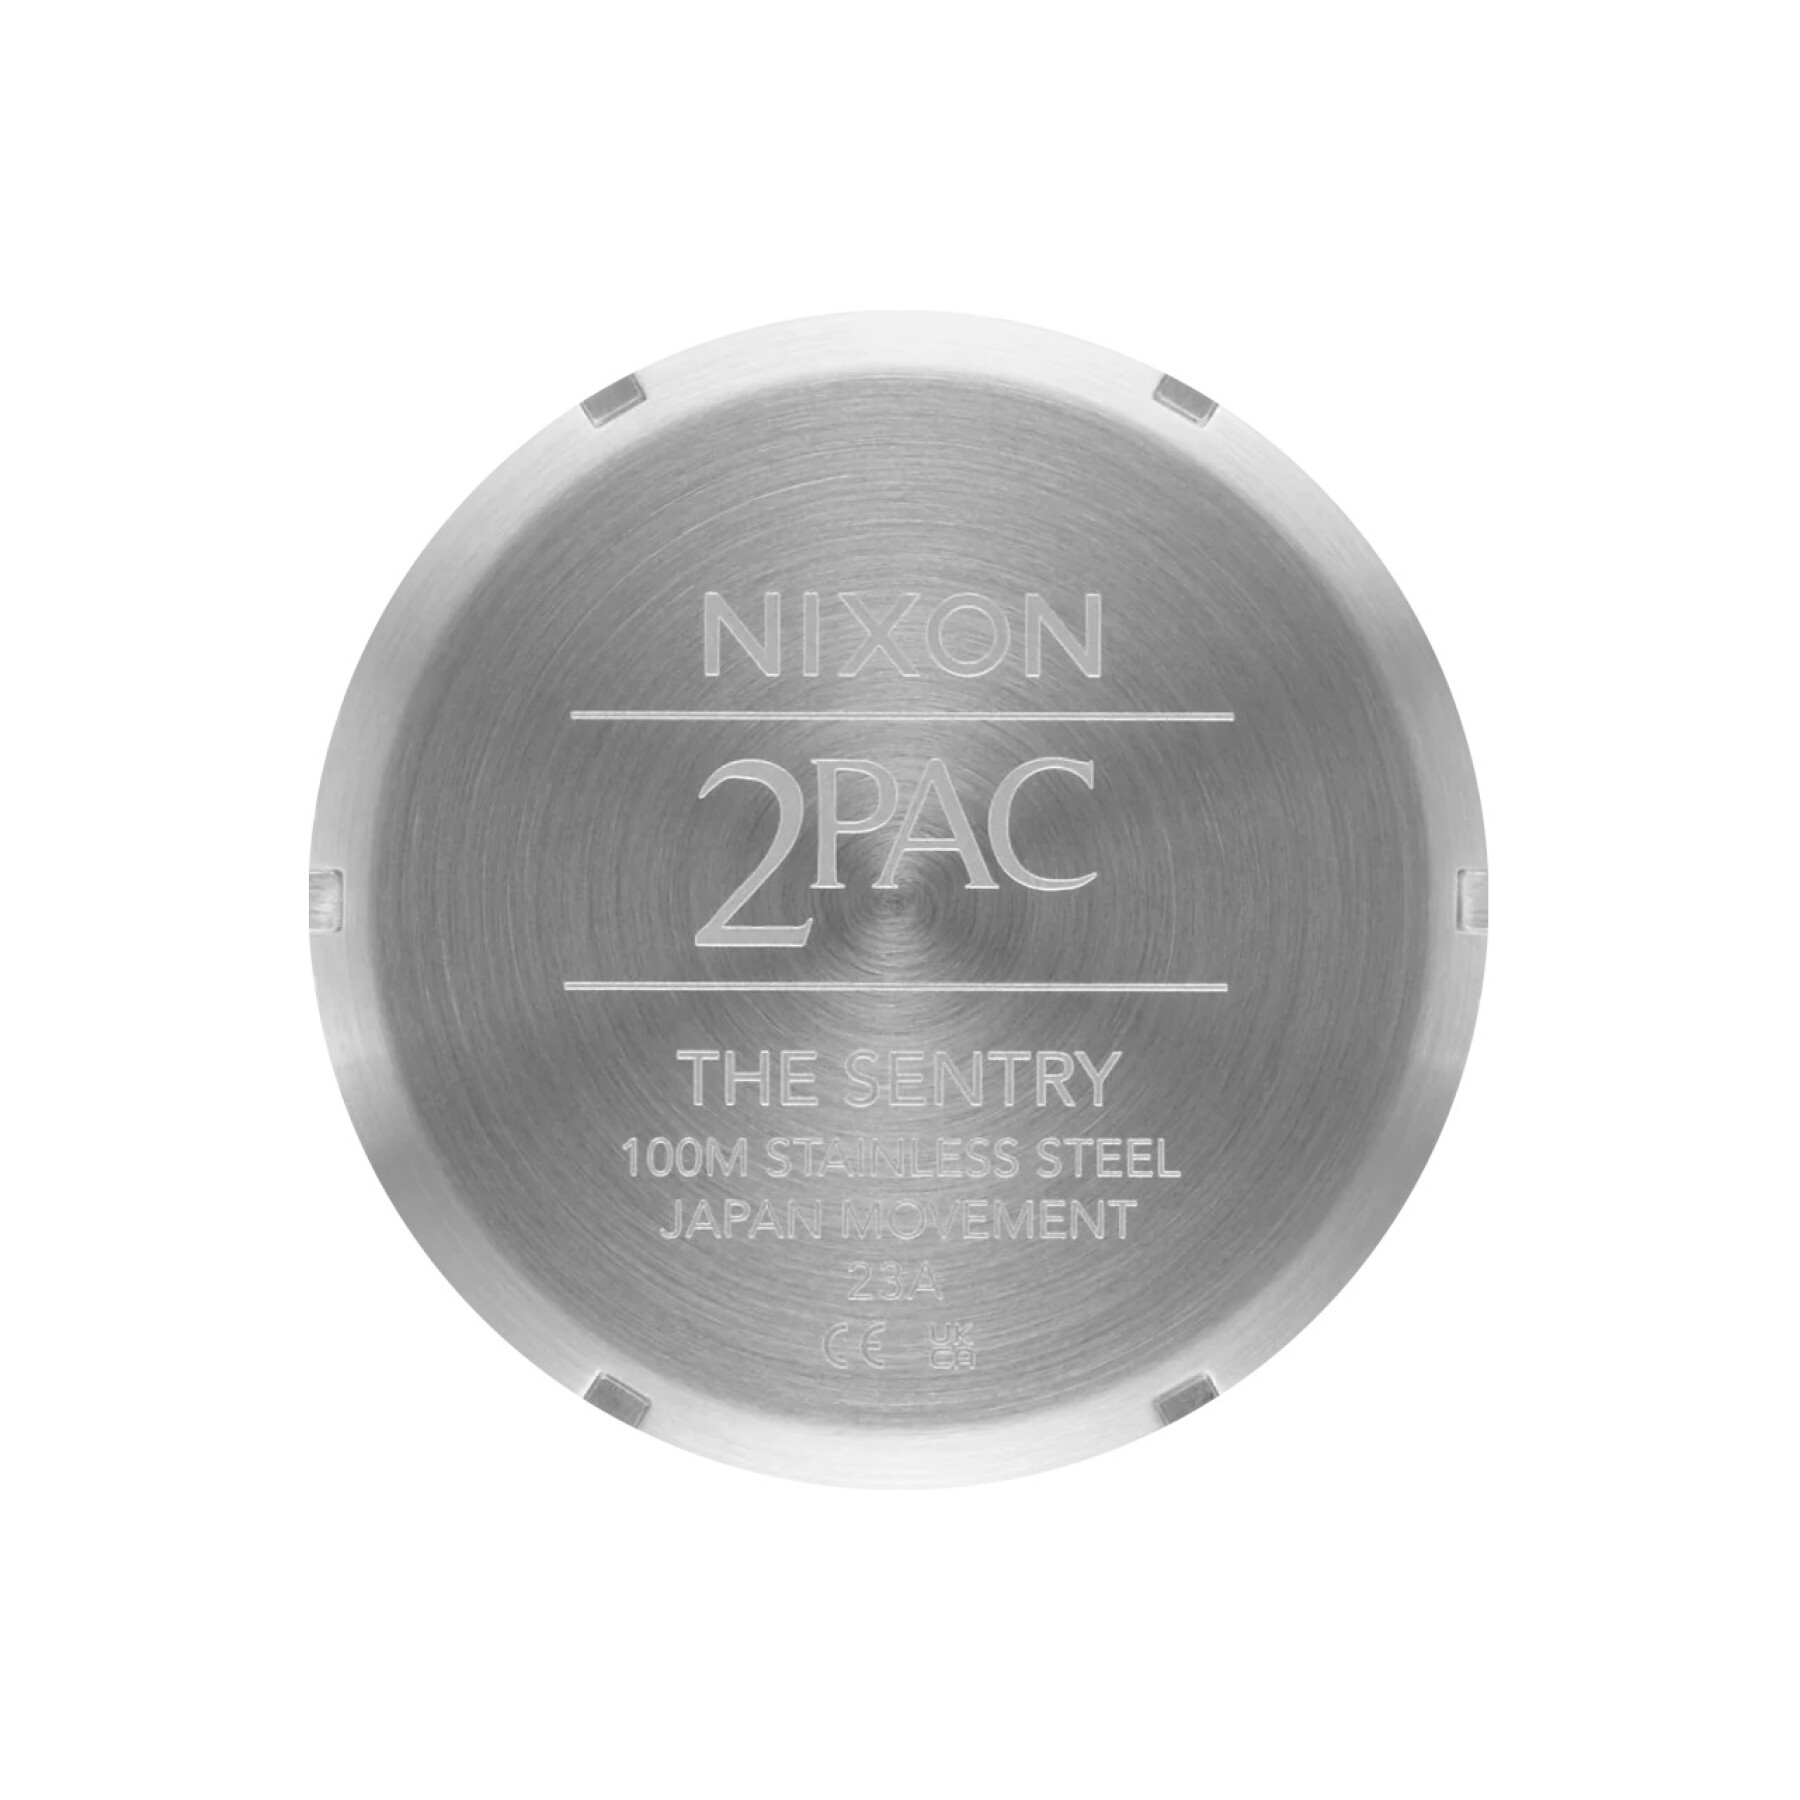 Montre acier inoxydable Nixon Tupac Sentry